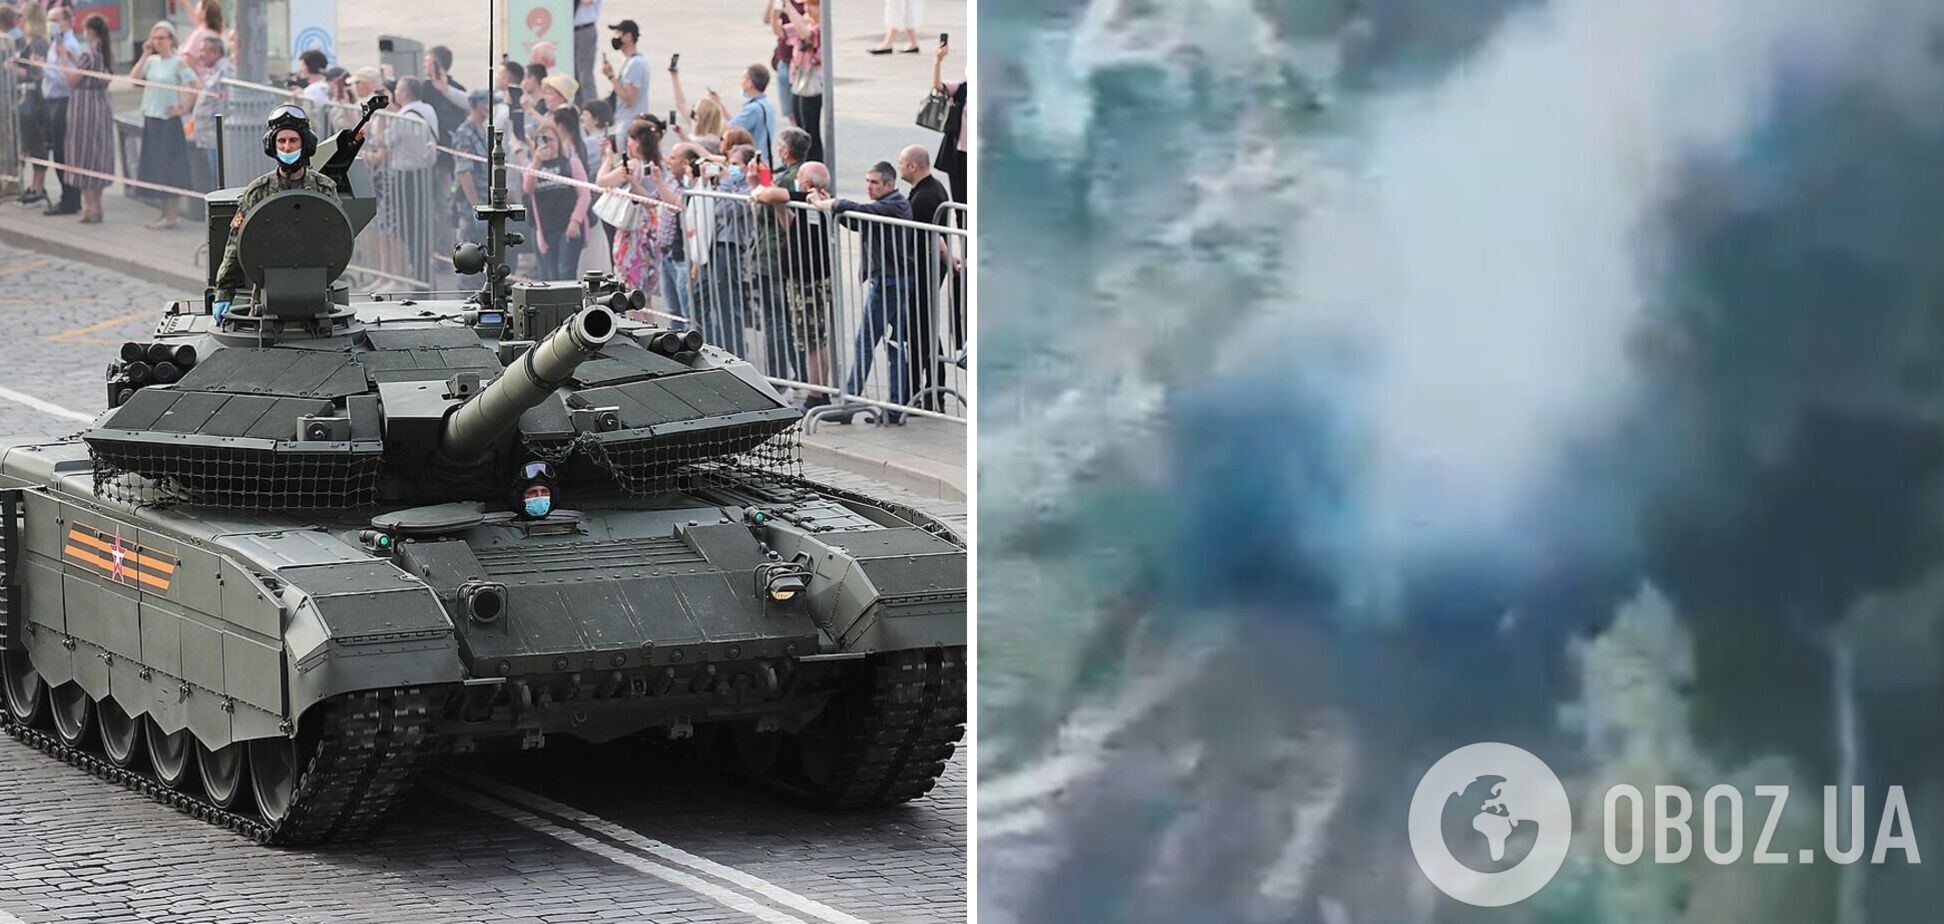 Редкий экземпляр: ВСУ уничтожили лучший российский танк Т-90 'Прорыв'. Видео